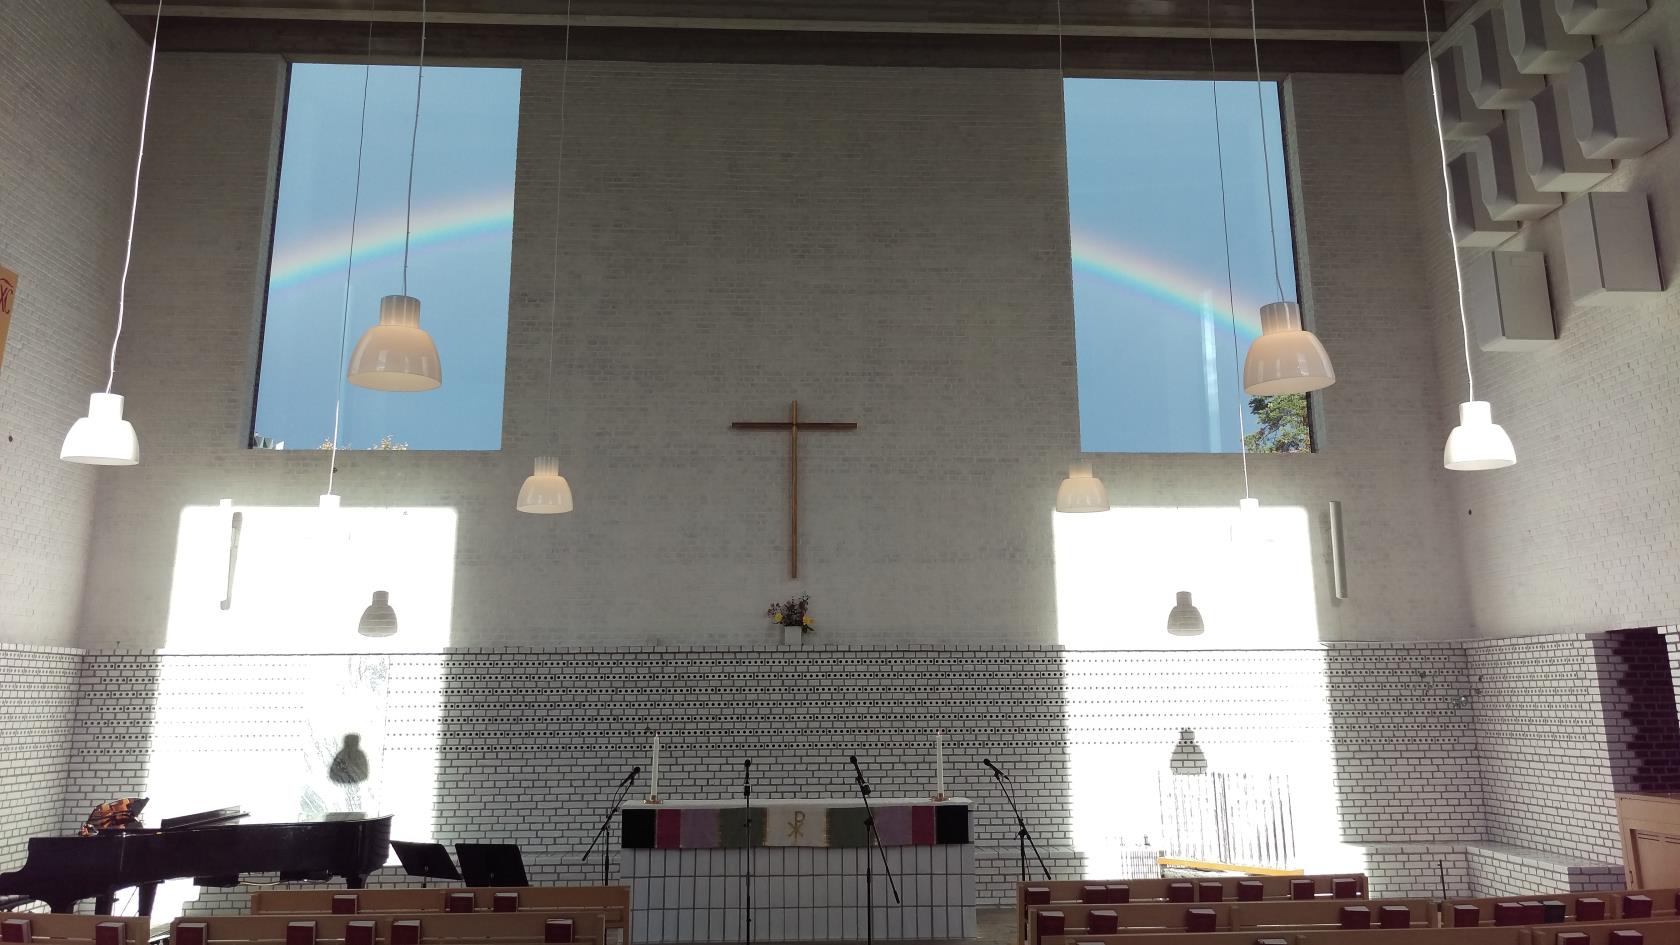 Årsta kyrka interiör med en regnbåge utanför fönstrena